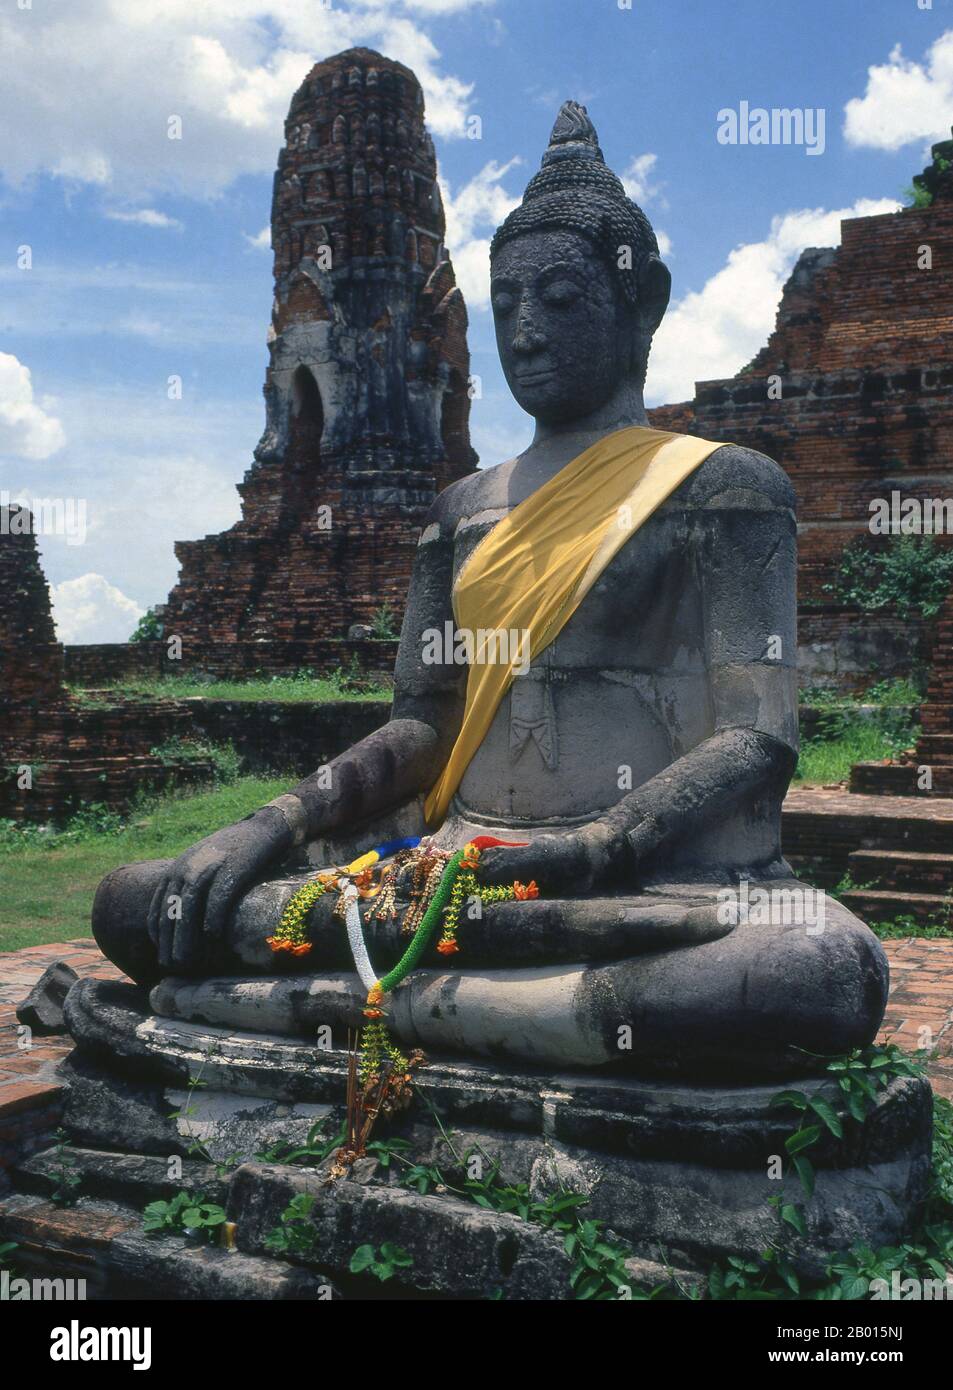 Thailandia: Buddha seduto, Wat Phra Mahathat, Ayutthaya Historical Park. Wat Phra Mahathat fu costruito durante il regno di Borommaracha i (Boromma Rachathirat i) o Khun Luang Pa Ngua (1370-1388), che era il terzo re del regno di Ayutthaya. Ayutthaya (Ayudhya) era un regno siamese che esisteva dal 1351 al 1767. Ayutthaya era amichevole verso i commercianti stranieri, compreso il cinese, vietnamita (Annamese), indiani, giapponesi e persiani, E poi i portoghesi, spagnoli, olandesi e francesi, permettendo loro di creare villaggi fuori dalle mura della città. Foto Stock